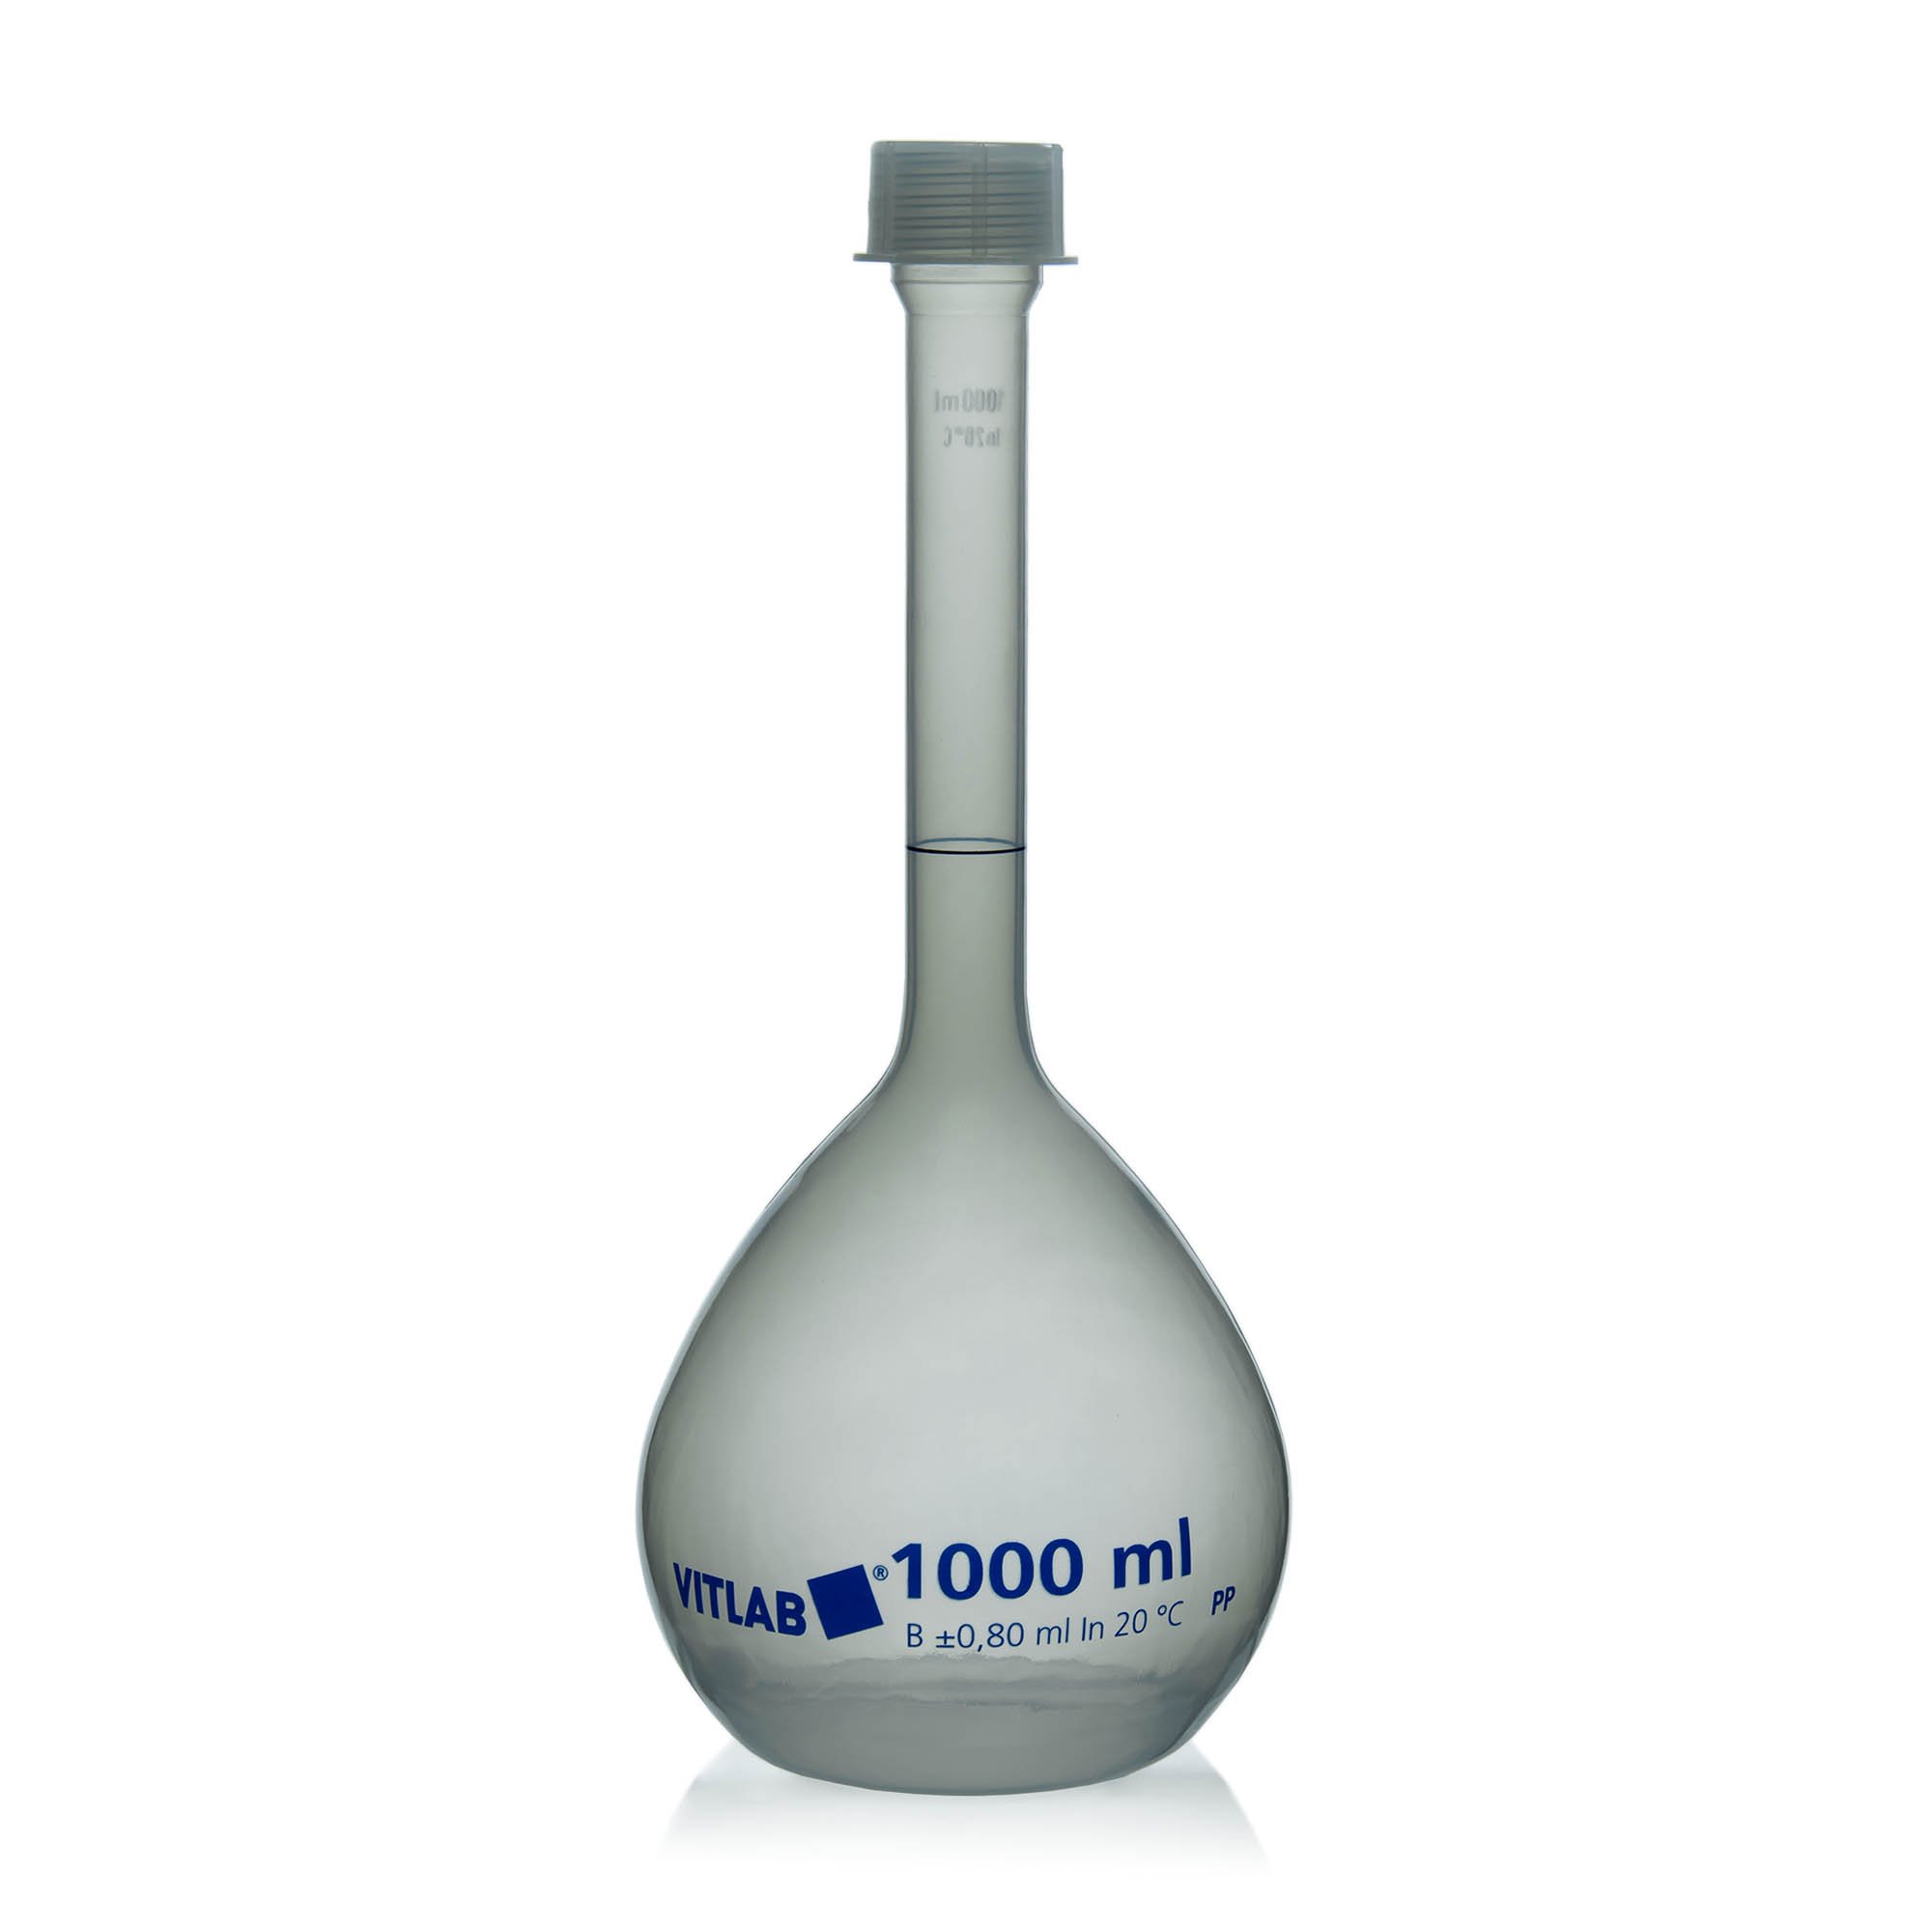 BrandTech Class B Polypropylene Volumetric Flask with Polypropylene Screw Cap - 1000mL (Pack of 1)